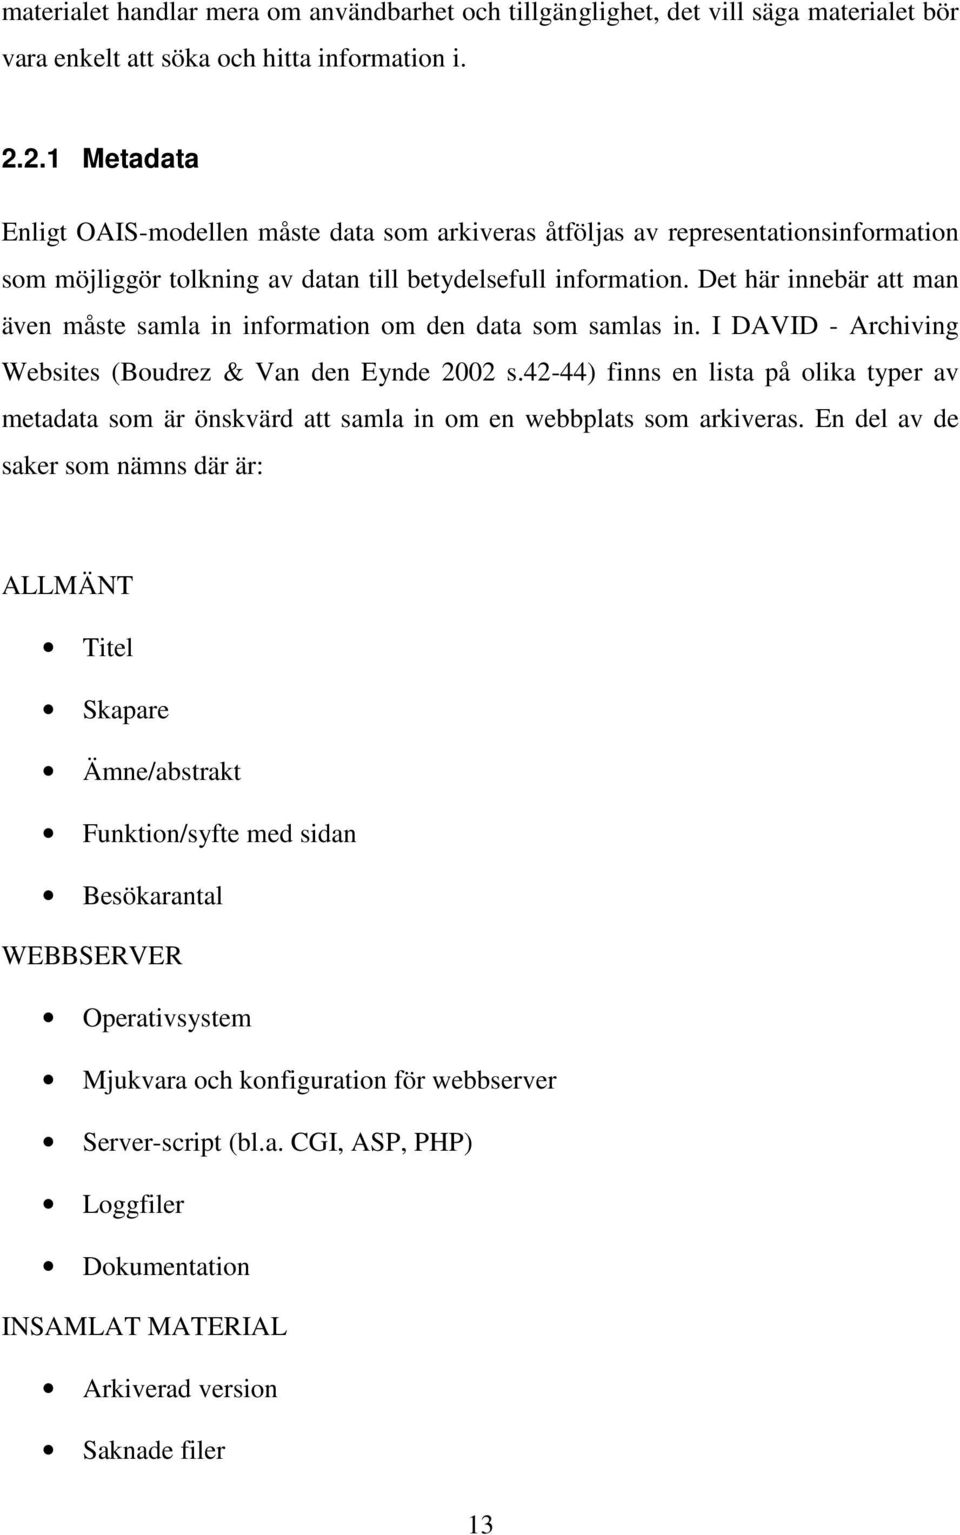 Det här innebär att man även måste samla in information om den data som samlas in. I DAVID - Archiving Websites (Boudrez & Van den Eynde 2002 s.